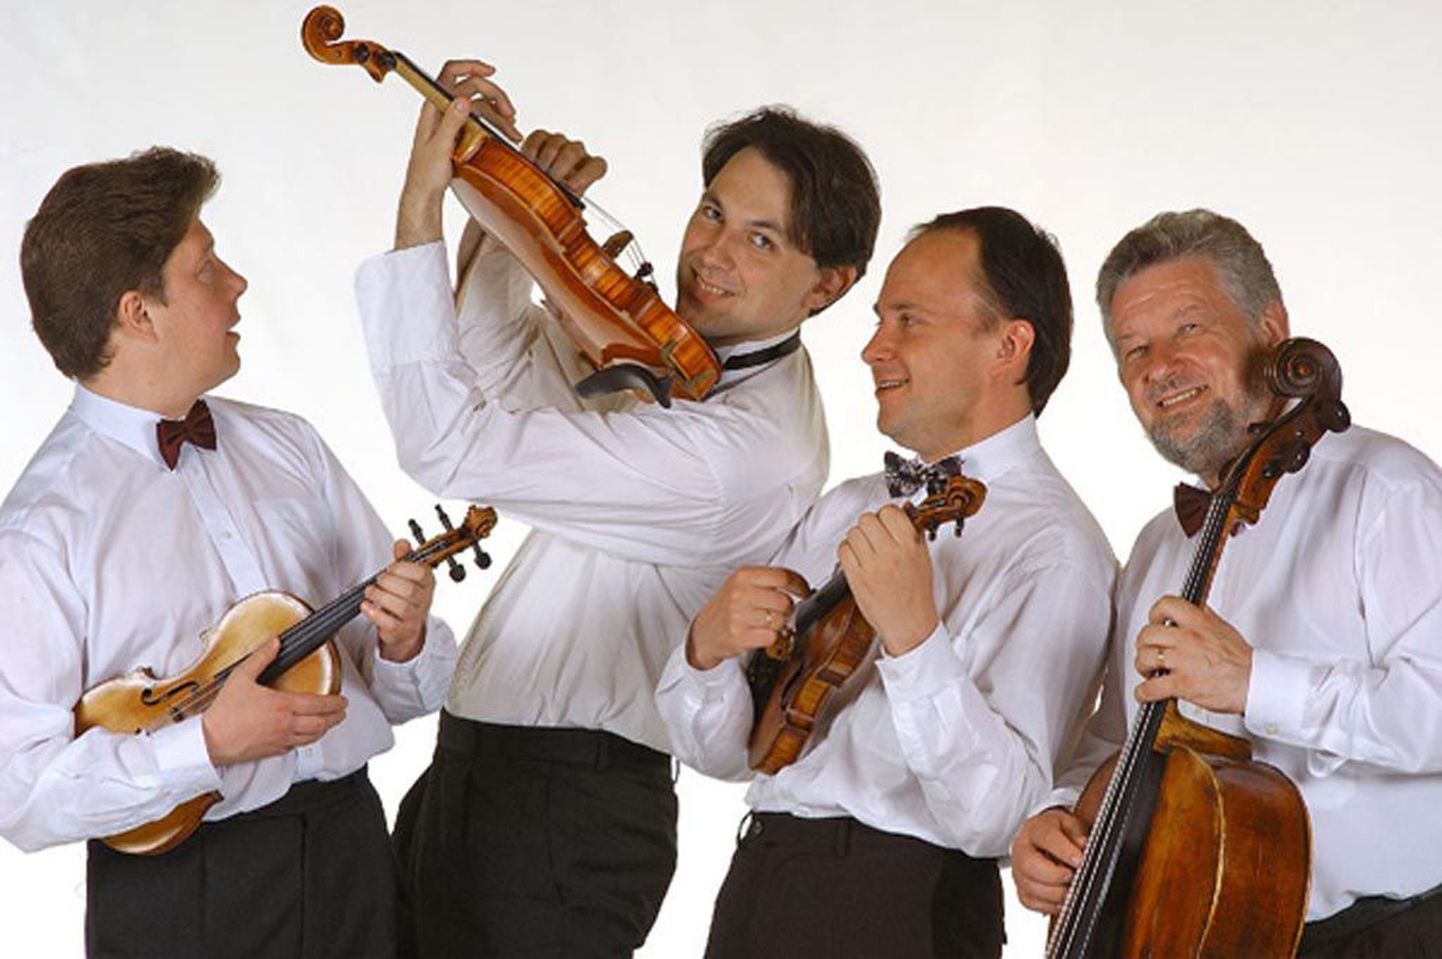 Èiurlionise keelpillikvartett – Jonas Tankevièius (vasakul, esimene viiul), Darius Dikšaitis (teine viiul), Gediminas Daèinskas (vioola) ja Saulius Lipèius (tšello) – on andnud üle 3500 kontserdi nii kodu- kui välismaal.